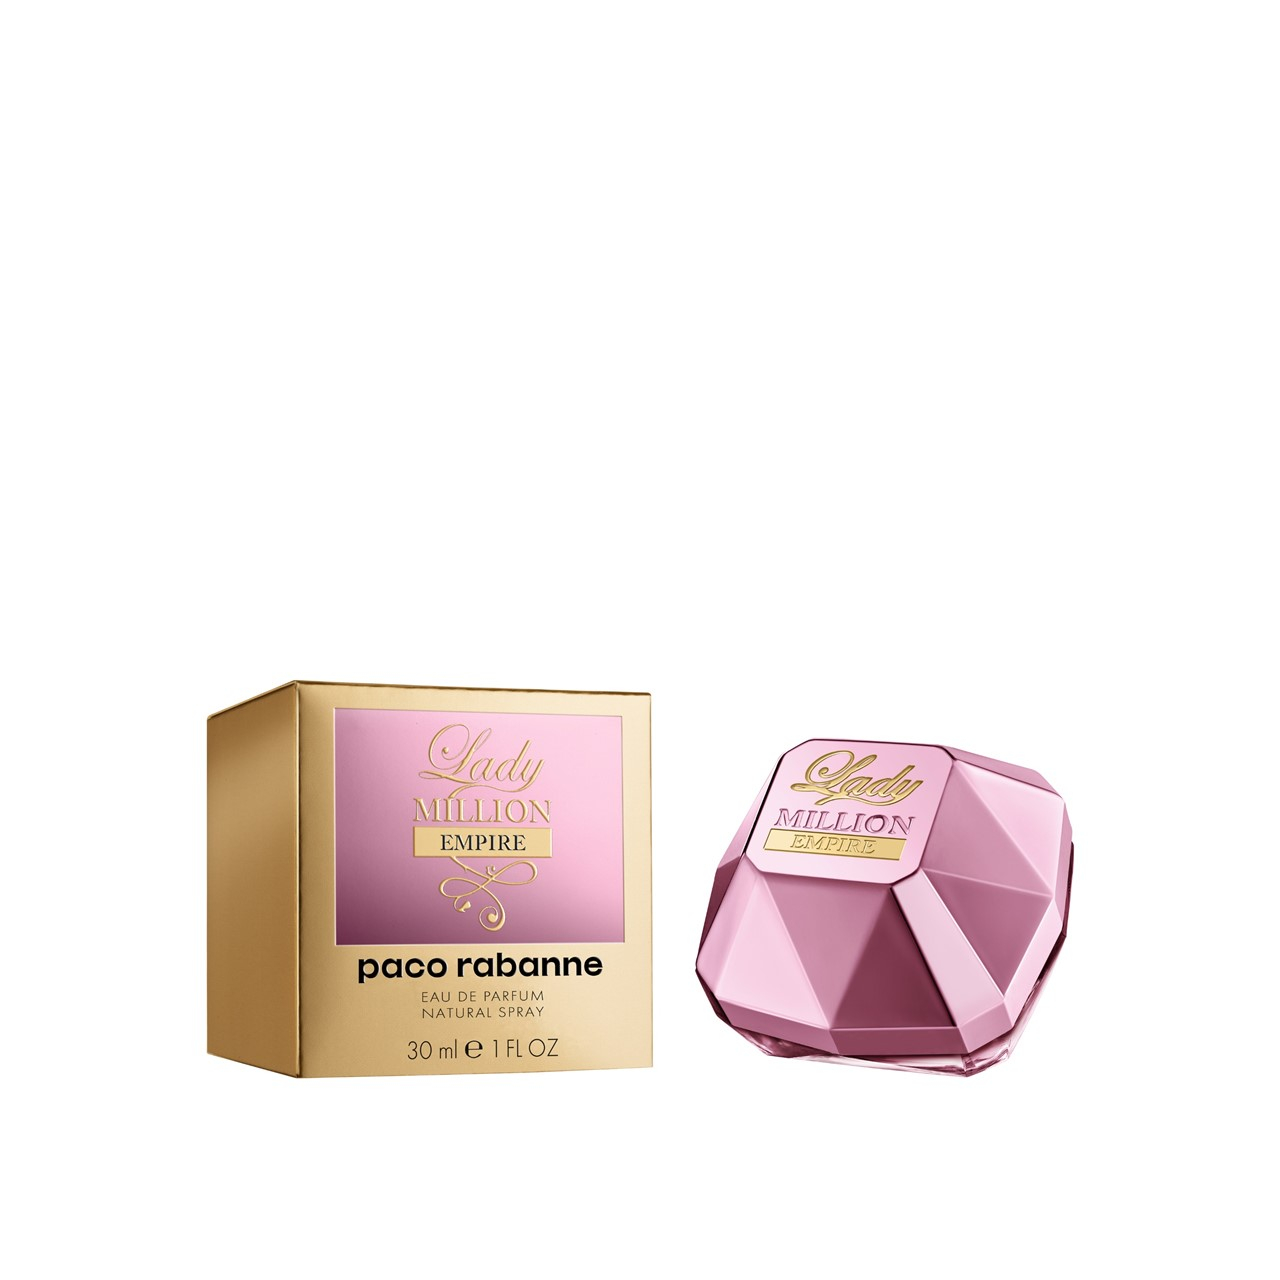 Paco Rabanne Lady Million Empire Eau de Parfum 30ml (1.0fl oz)